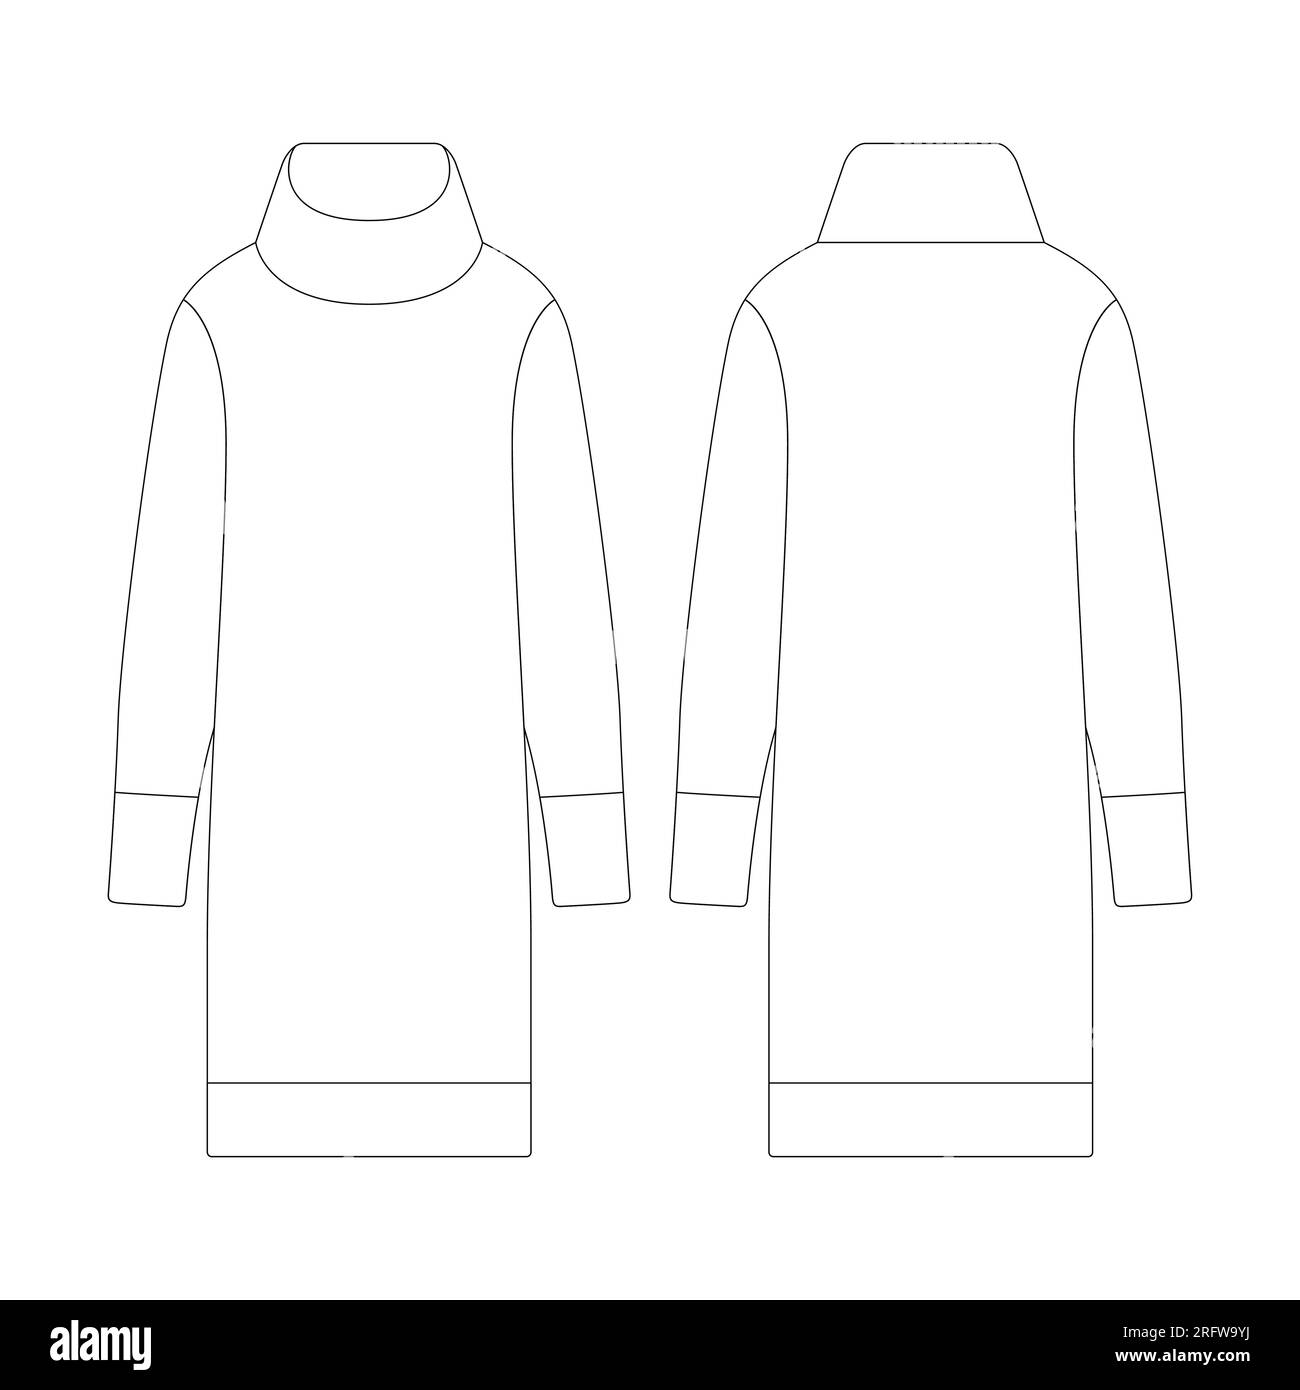 Modèle femmes col roulé robe à manches longues illustration vectorielle design plat contour de collection de vêtements d'extérieur Illustration de Vecteur